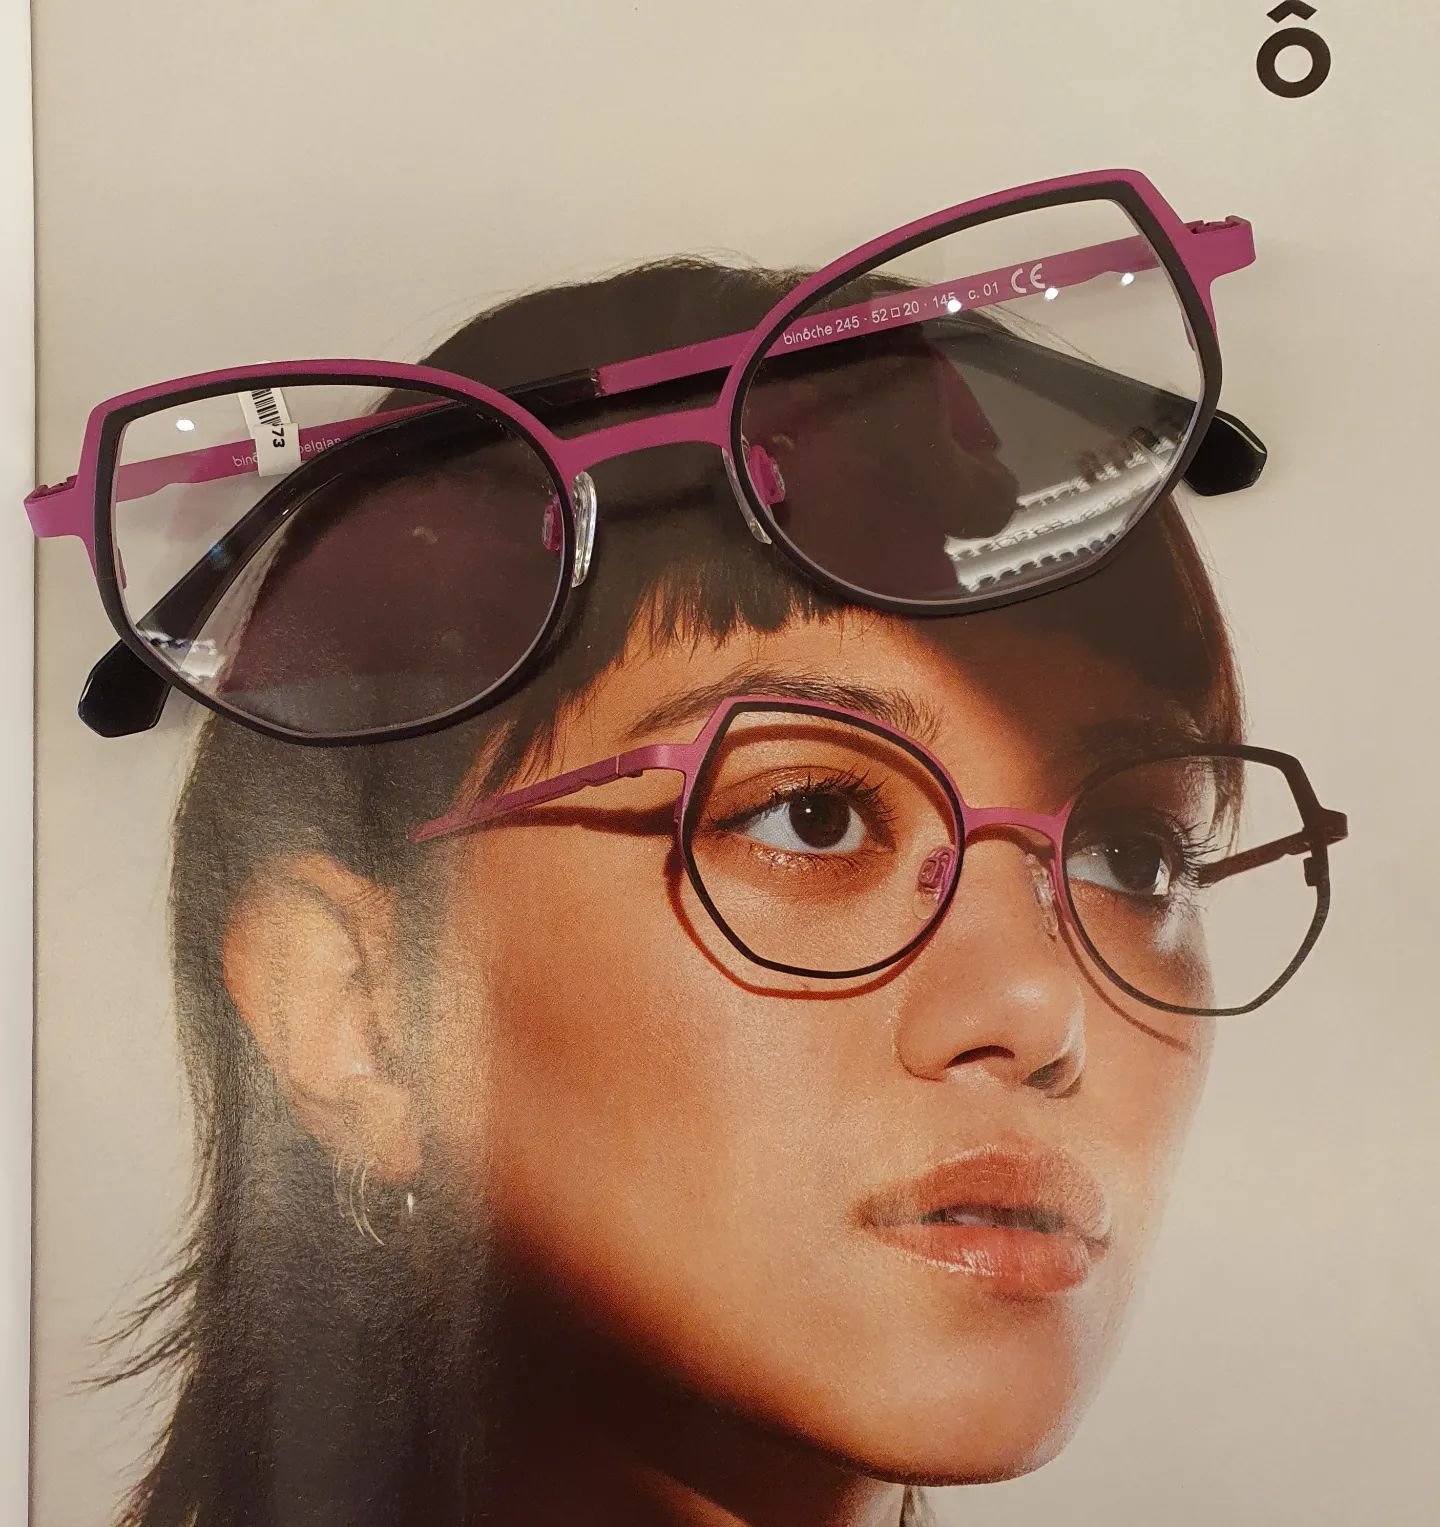 Bin&ocirc;che eyewear staat sinds 1996 garant voor kwaliteit.  Ontworpen in Belgi&euml; en handgemaakt in Itali&euml;.🔝 Deze schitterende collectie heeft de erkenning 'Dit is Belgisch'🇧🇪
#ikkoopbelgisch #veurne #8630 #bin&ocirc;che #brillen #Zonne